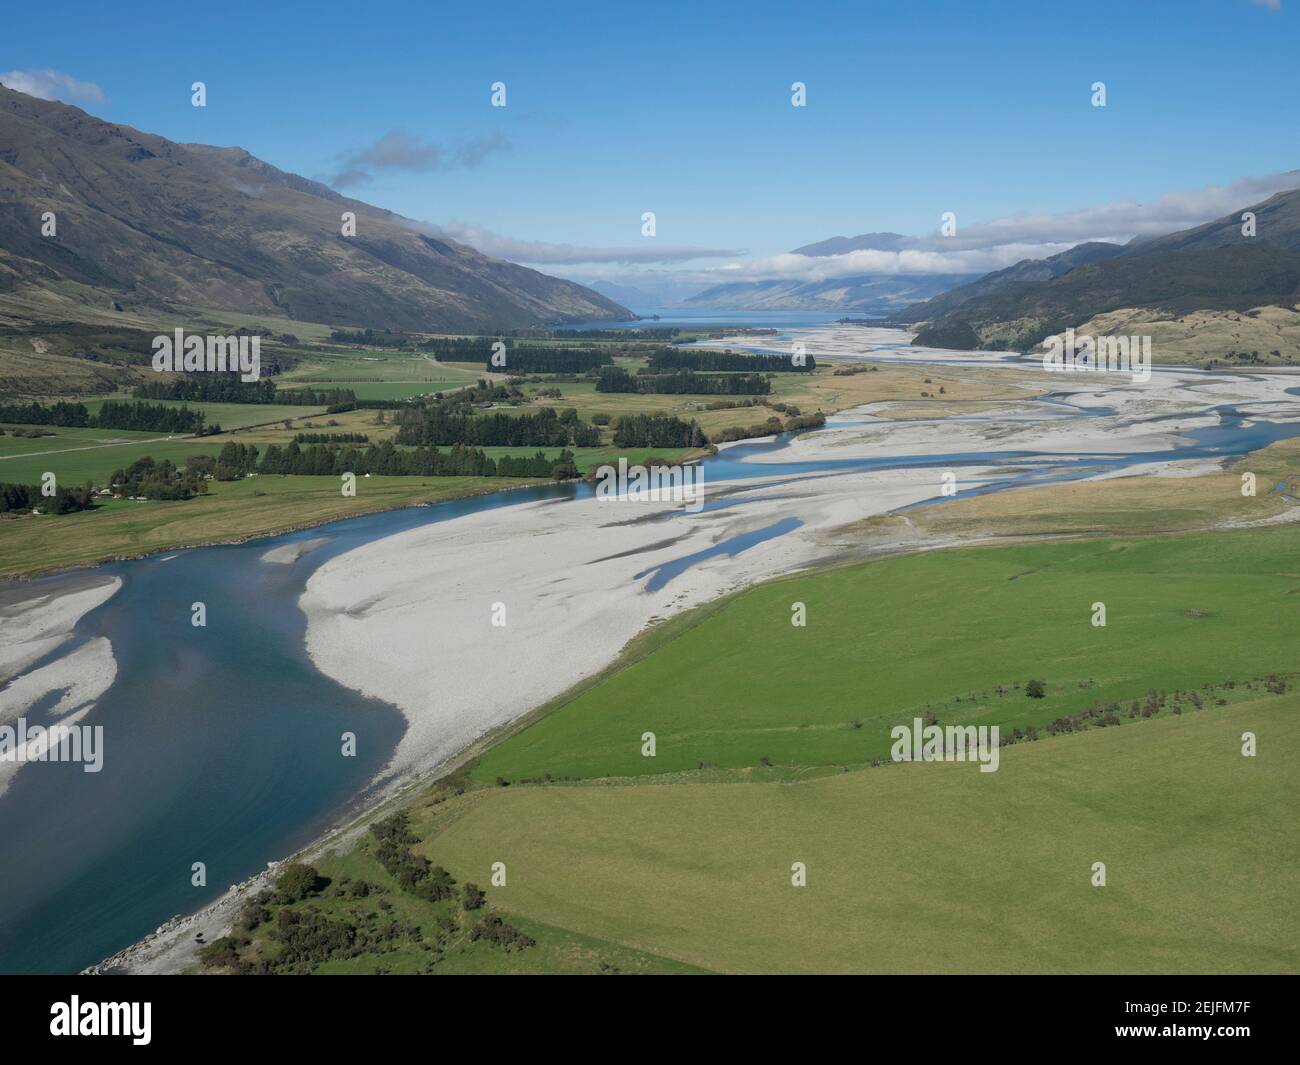 Rivière Matukituki qui coule du parc national Mount Aspiring jusqu'au lac Wanaka, district du lac Queenstown, Otago, Île du Sud, Nouvelle-Zélande Banque D'Images